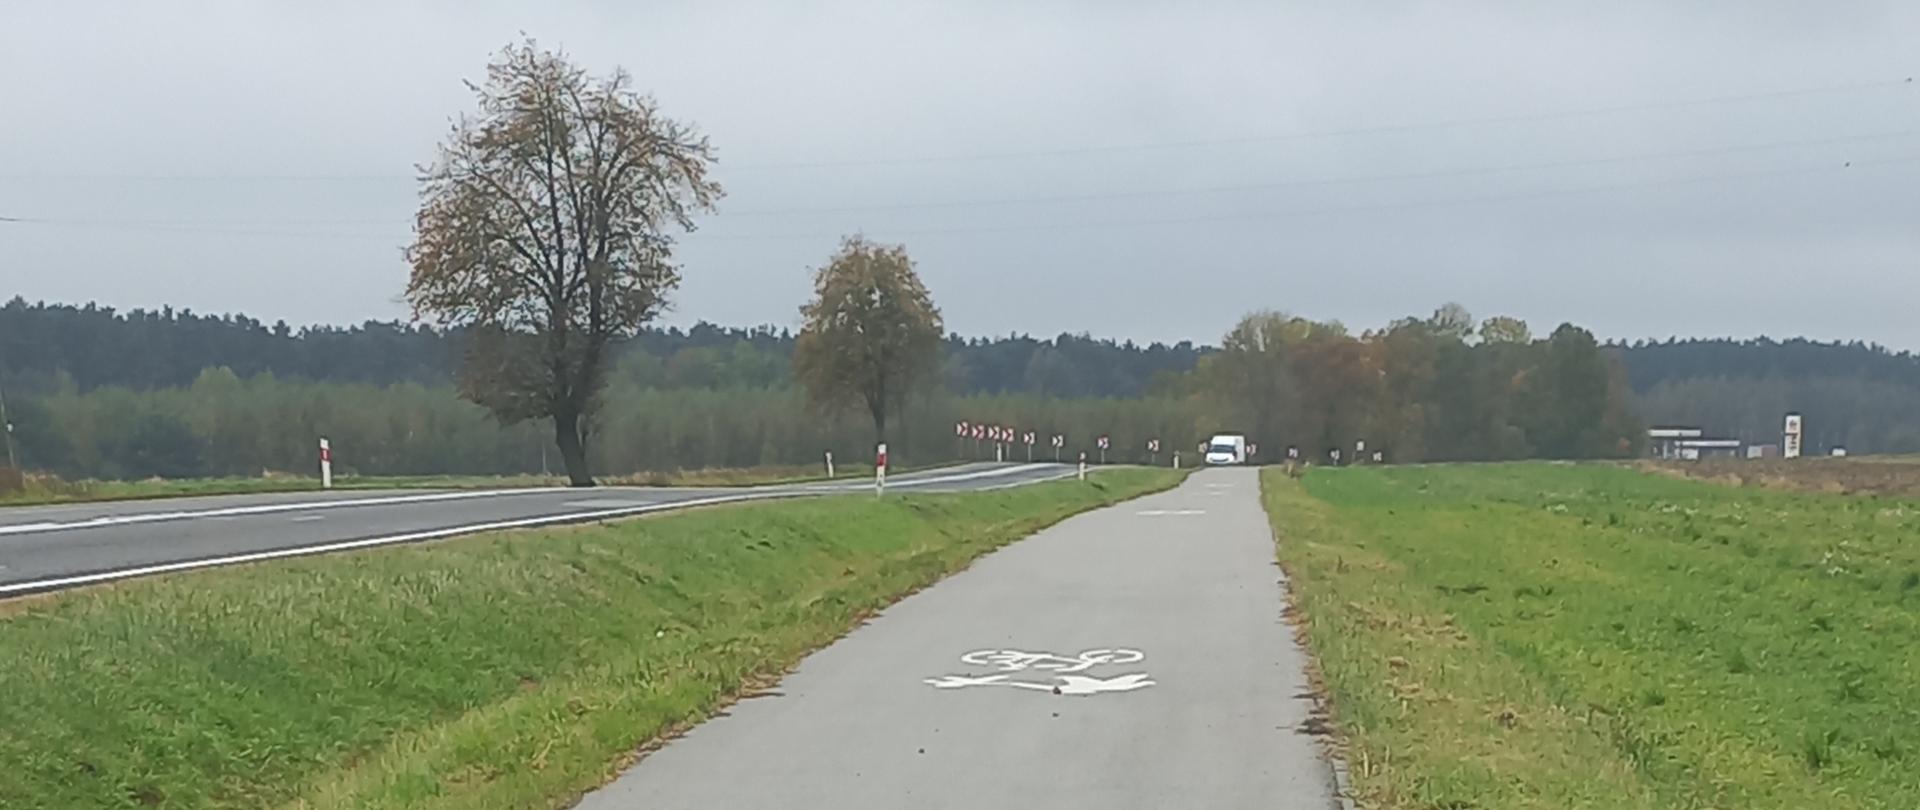 DK78 ciąg pieszo-rowerowy - asfaltowa ścieżka rowerowa oddzielona pasem trawnika od drogi dla samochodów 